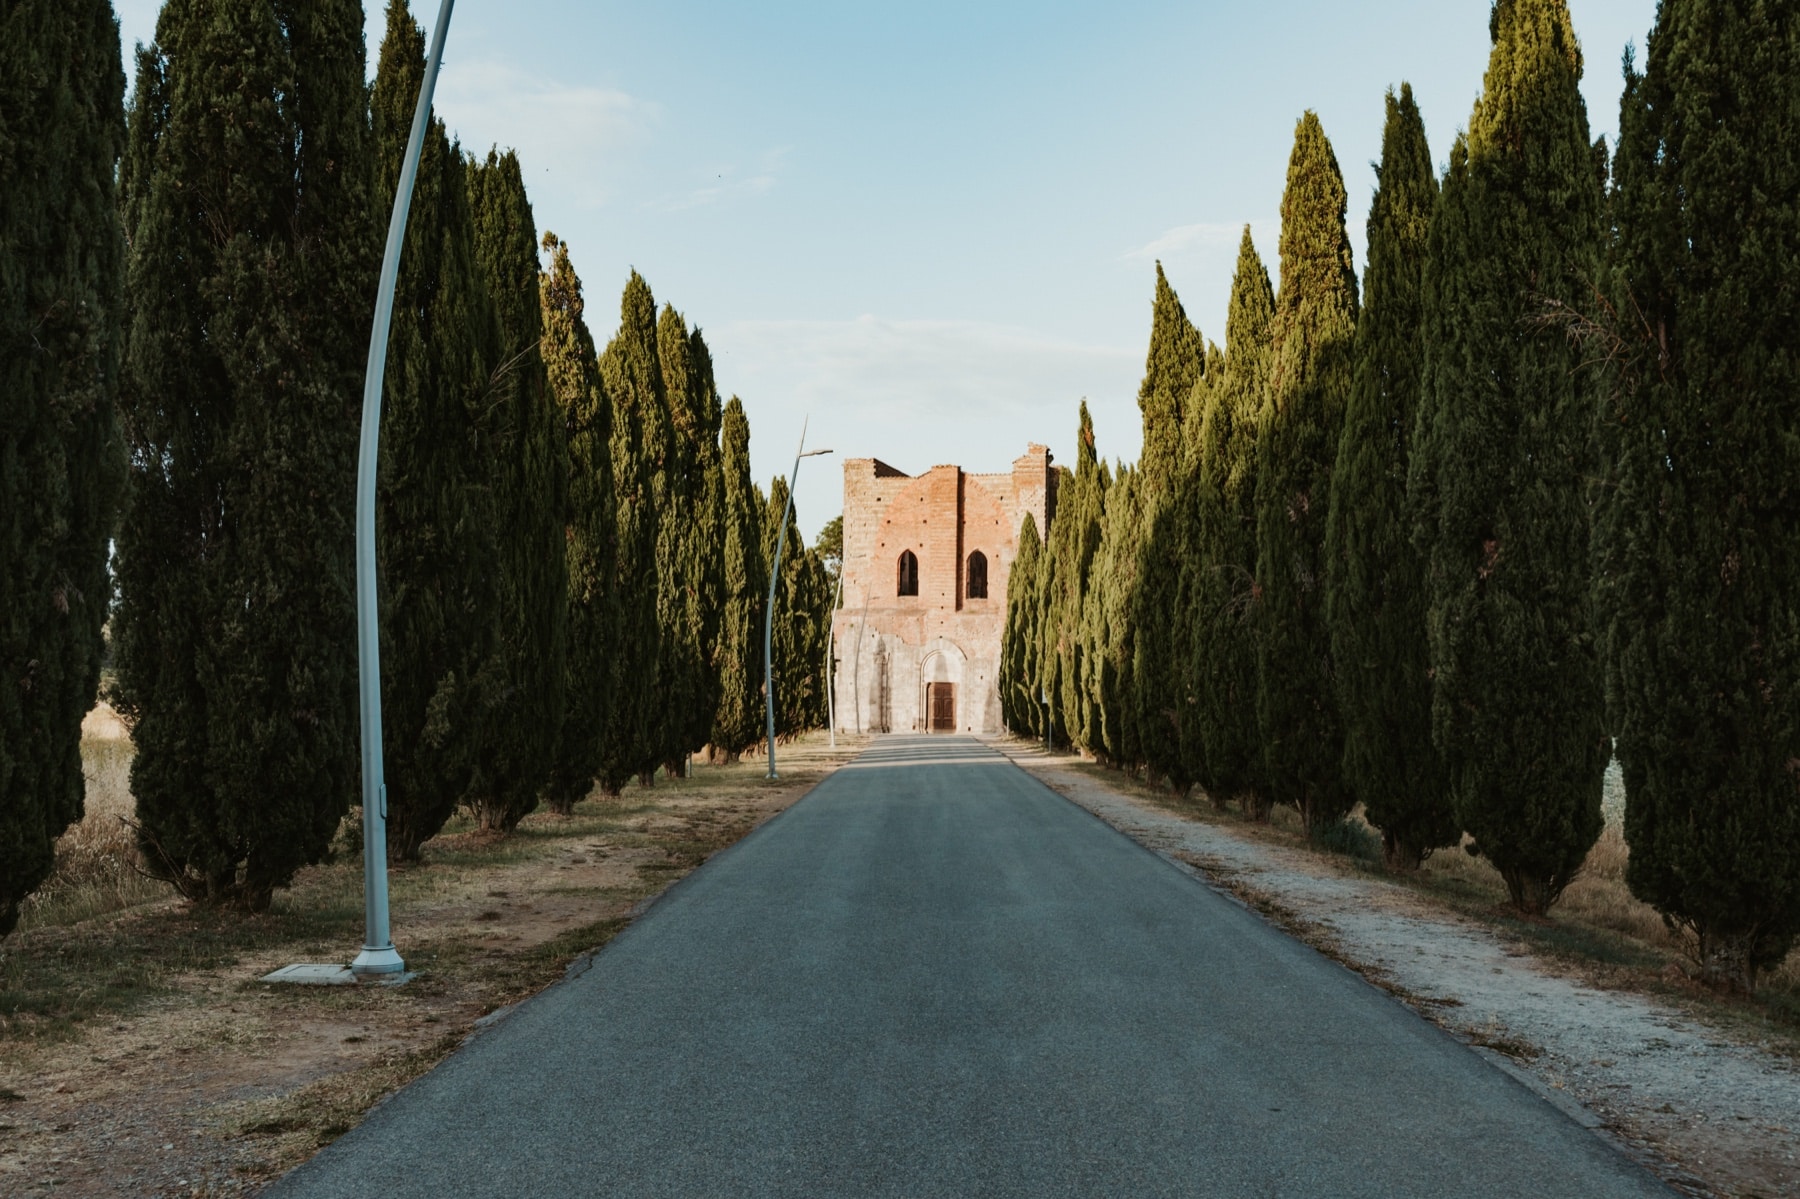 Matrimonio nell’Abbazia di San Galgano in Toscana